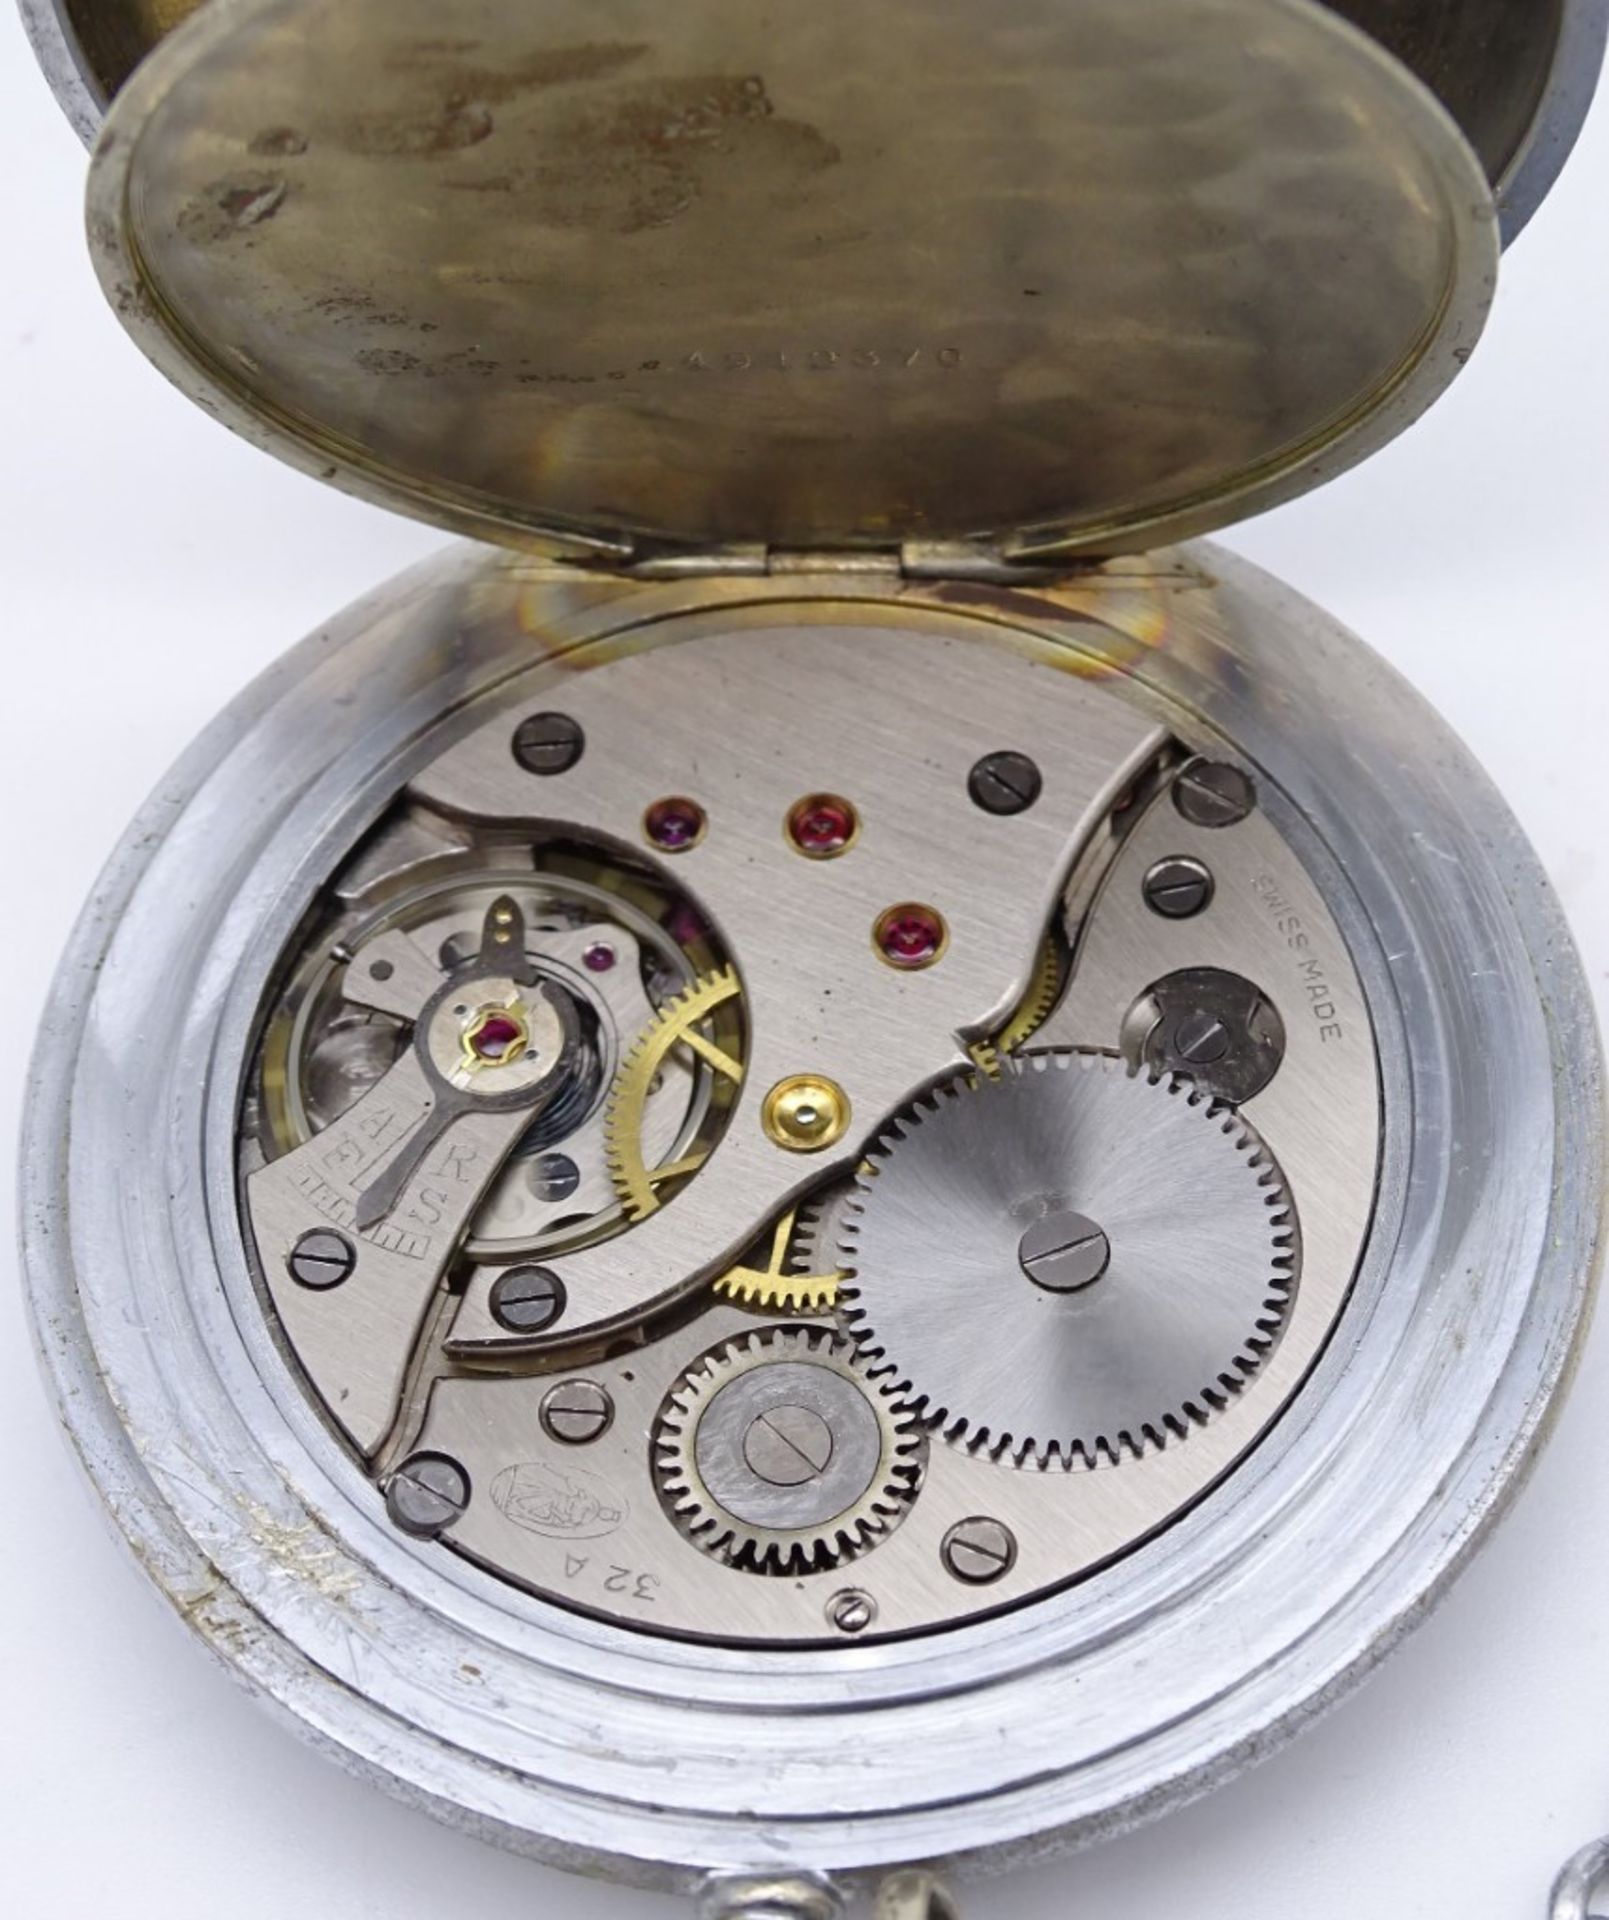 Taschenuhr, "Saxonia", Handaufzug, mit Uhrenkette, Gehäuse Ø 5,5 cm, Werk läuft, mit Alters- und Ge - Bild 6 aus 7